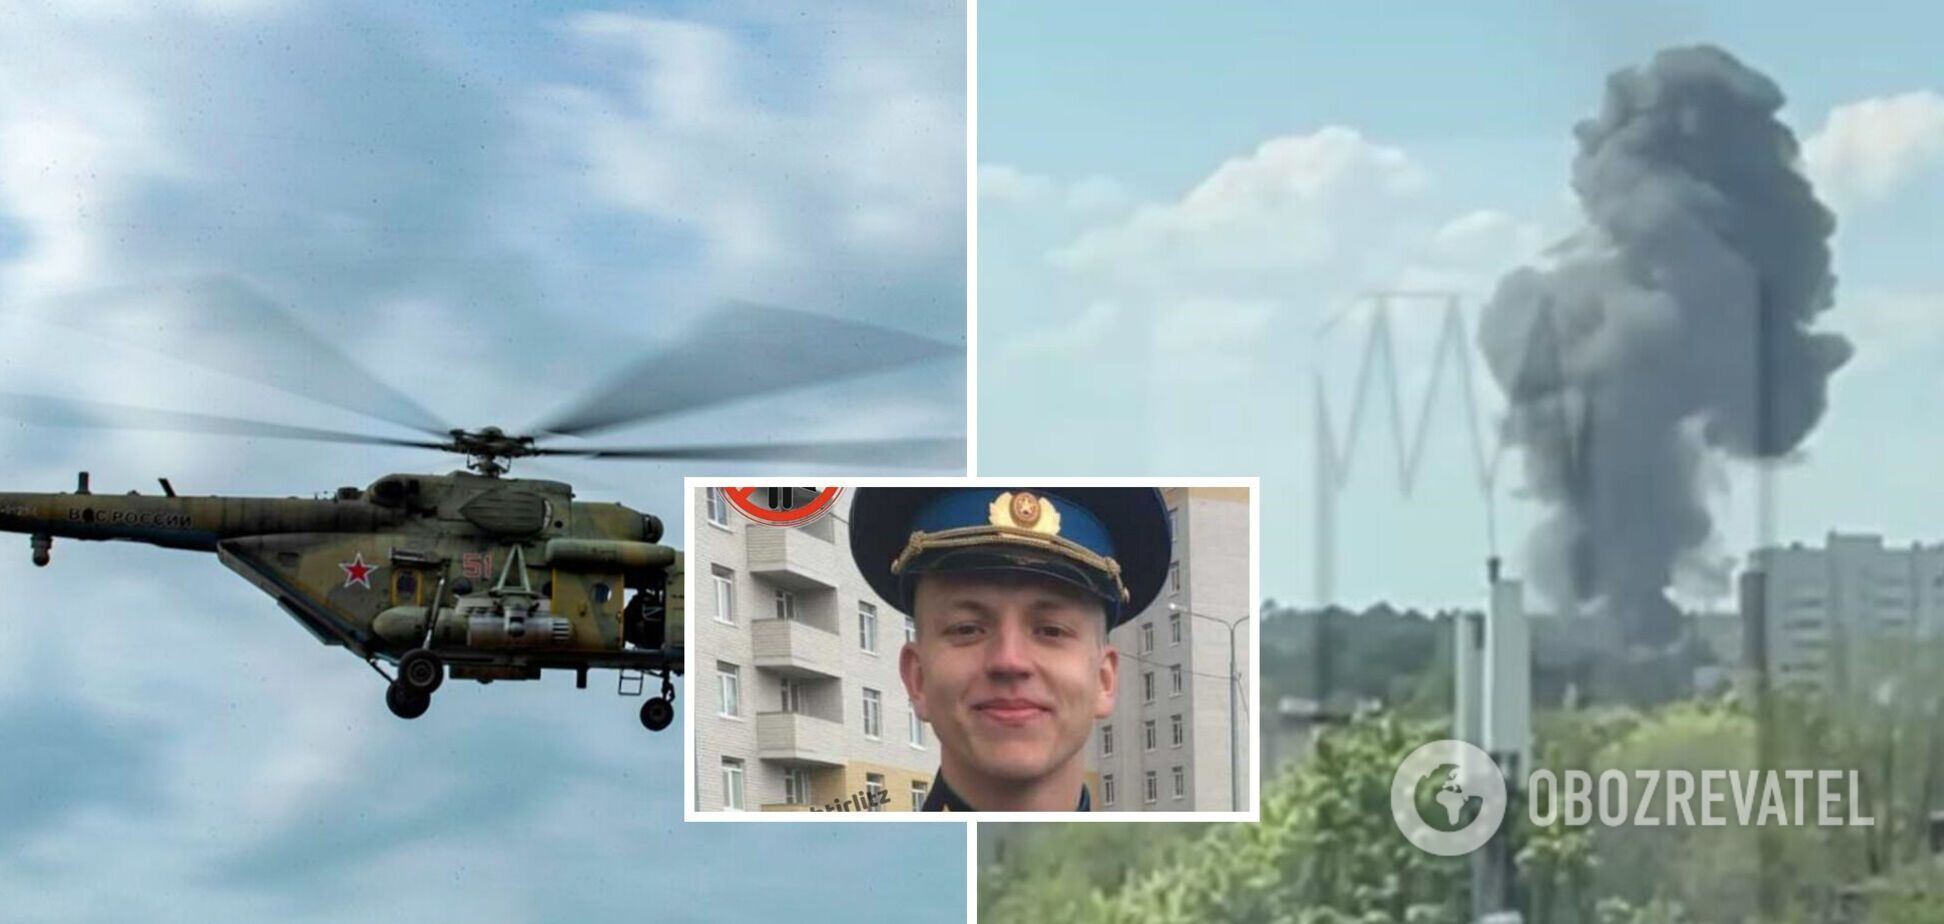 'Демобилизация' удалась: в сети появились фото российских пилотов, погибших во время крушения Ми-8 в Брянской области